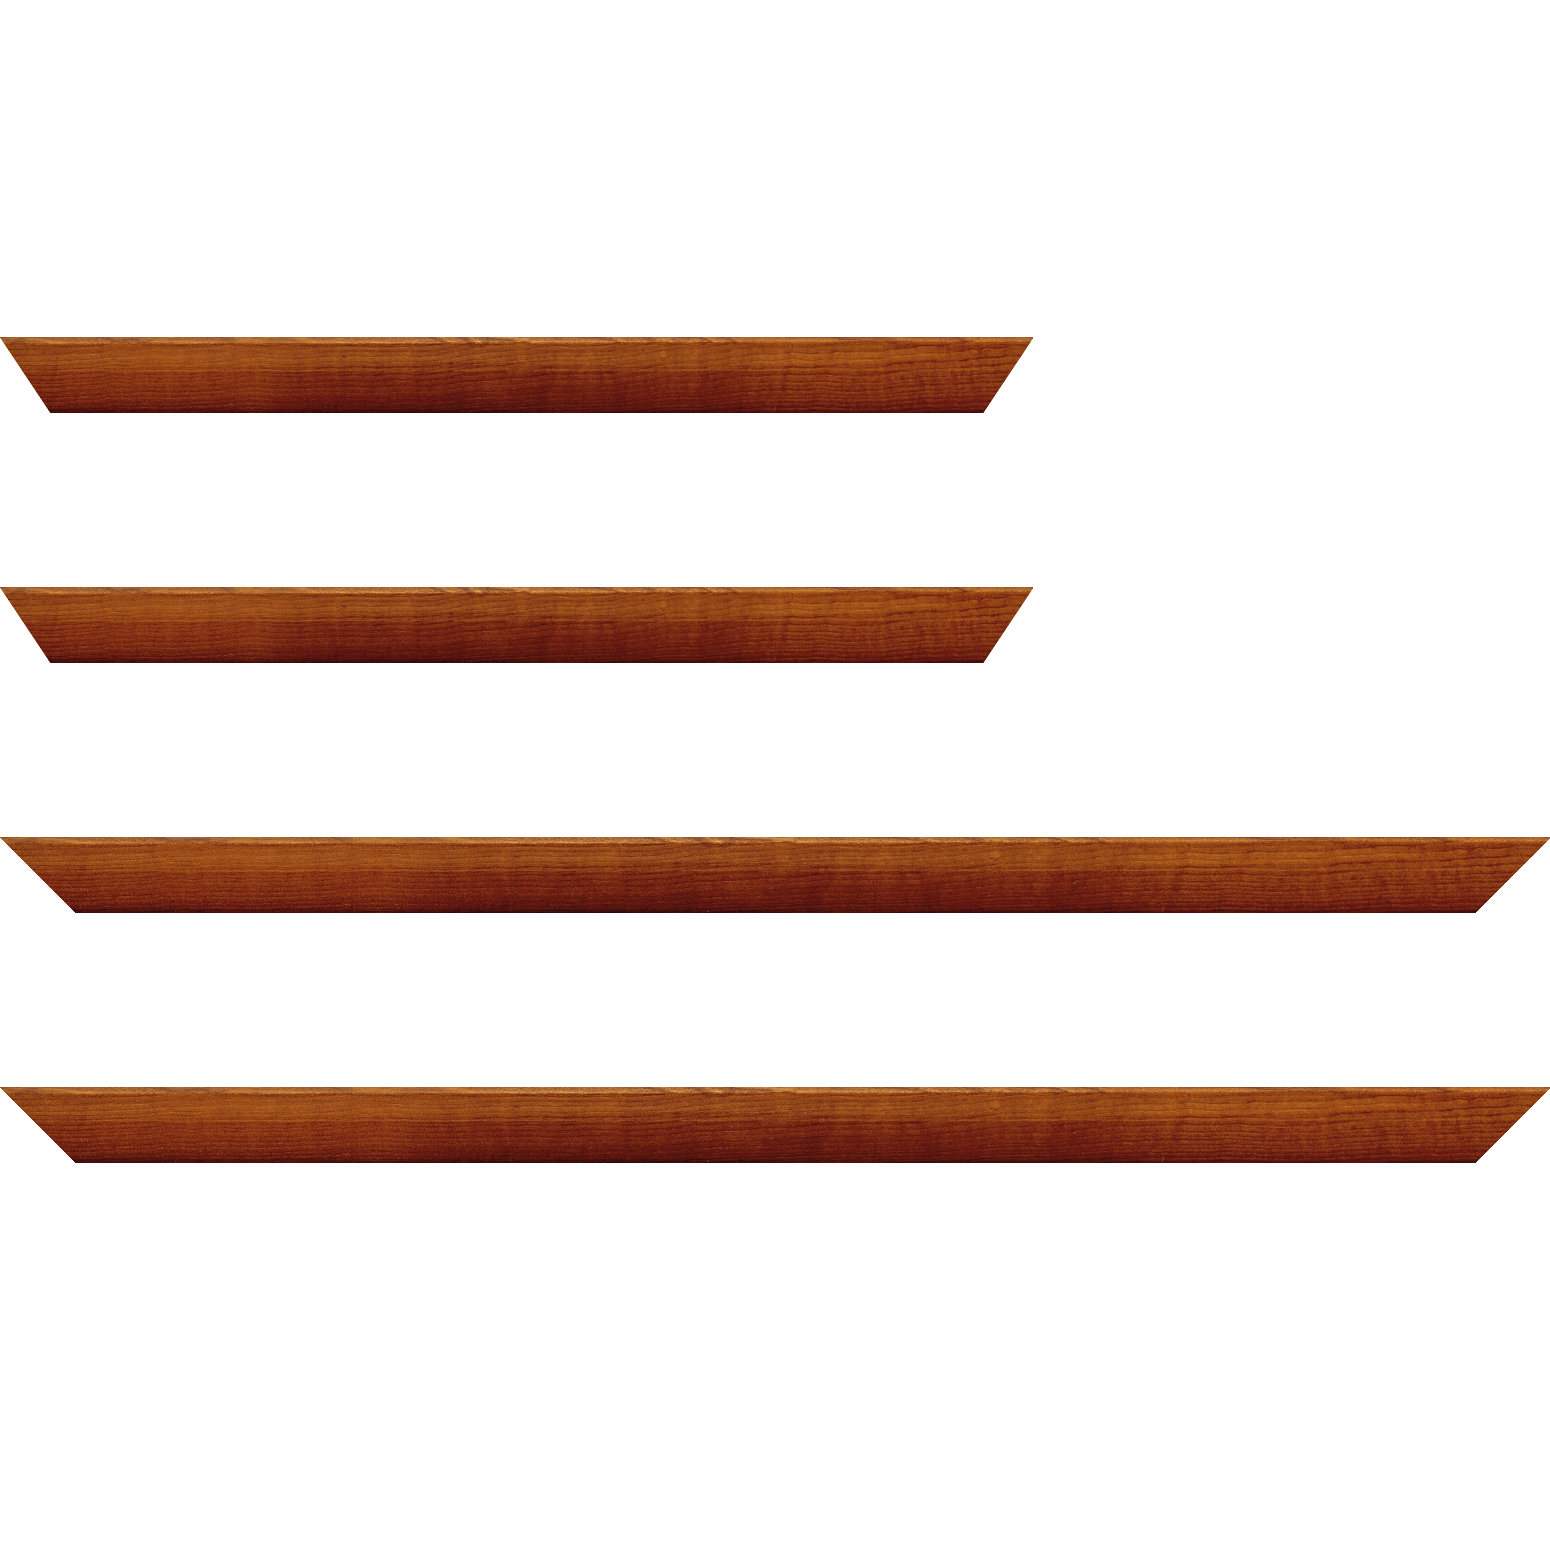 Baguette bois profil arrondi en pente plongeant largeur 2.4cm couleur marron miel finition vernis brillant,veine du bois  apparent (pin) , - 18x24